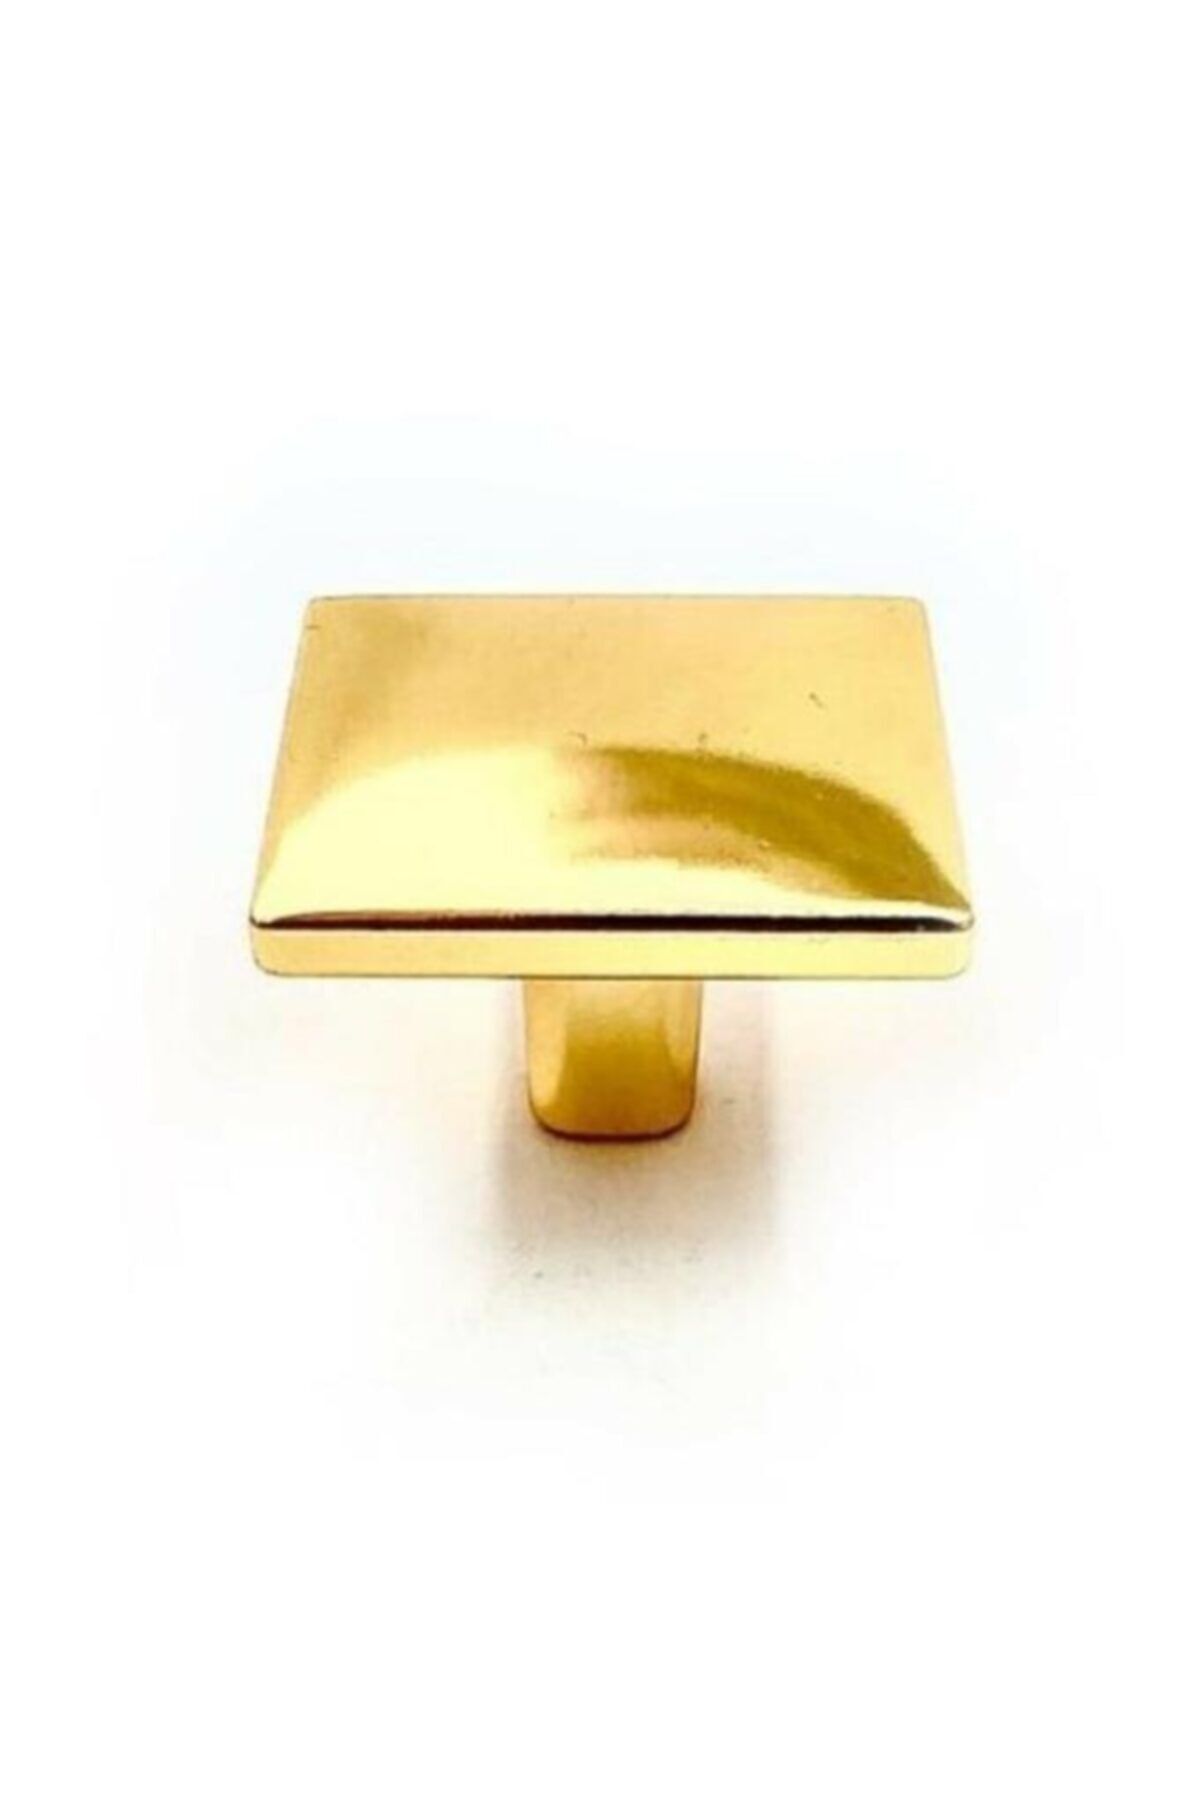 bablife Altın Sarısı Kare Düğme (4cm X 4cm) Metal Lüks Çekmece Dolap Mobilya Kulpları